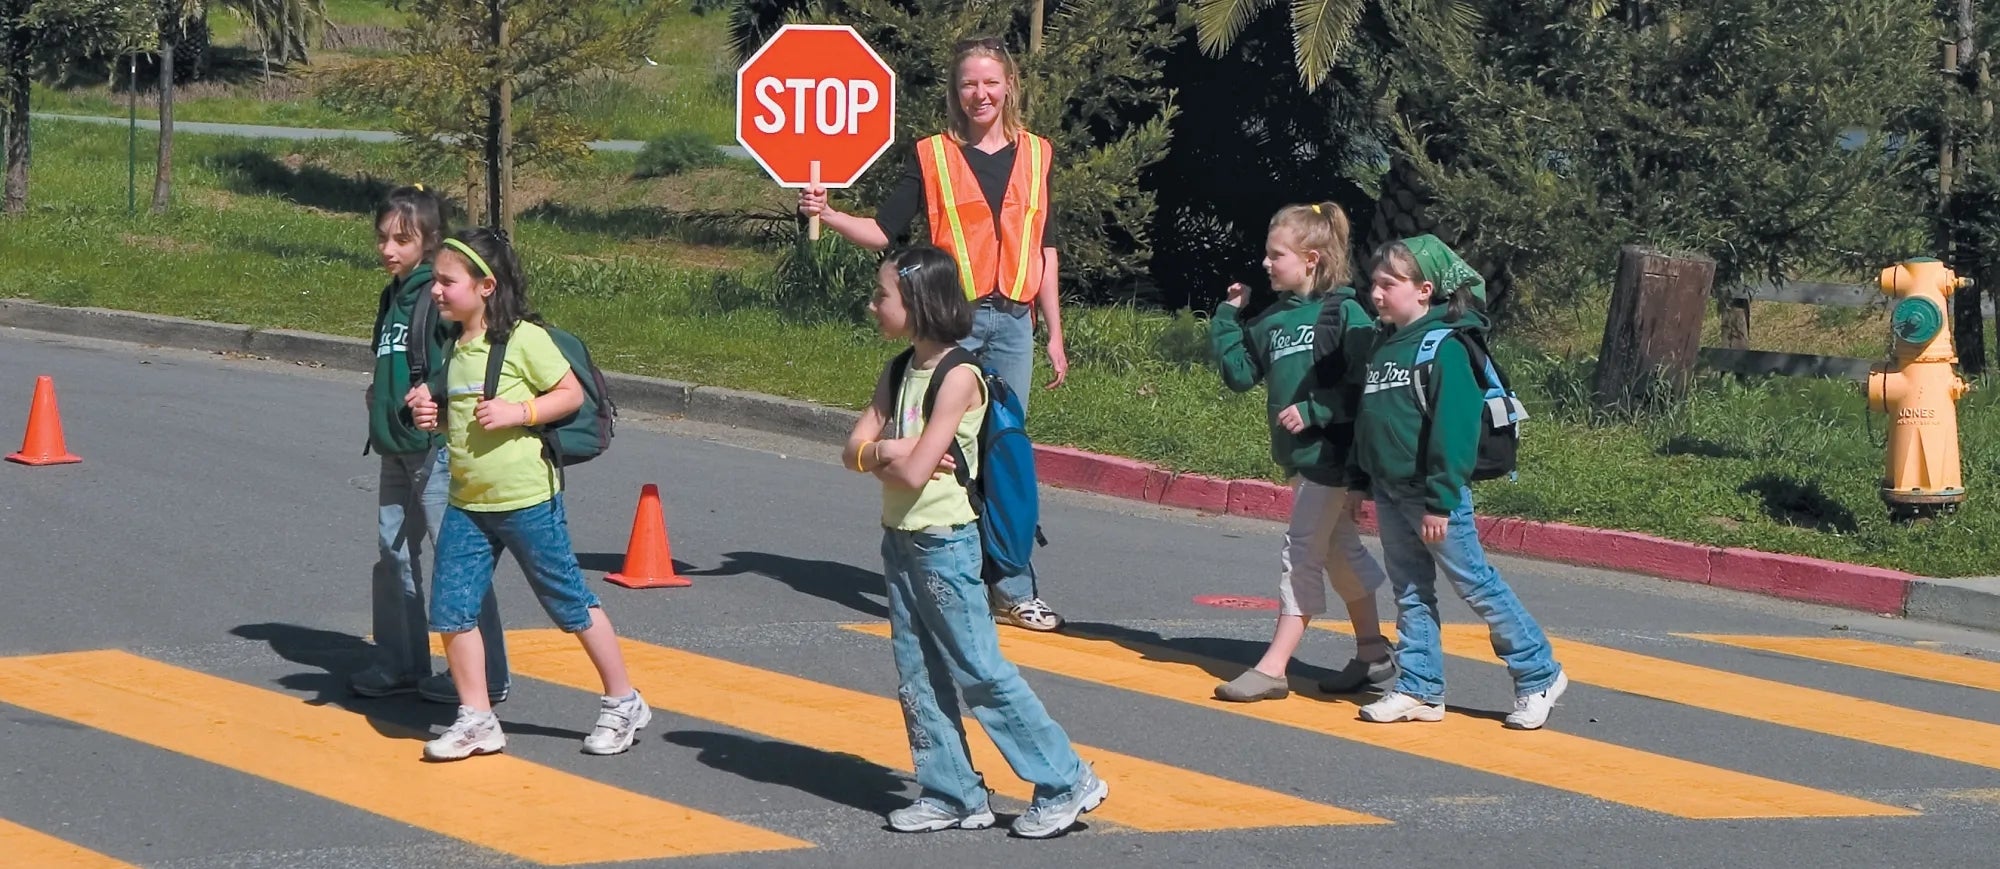 Kids in crosswalk on their way to school